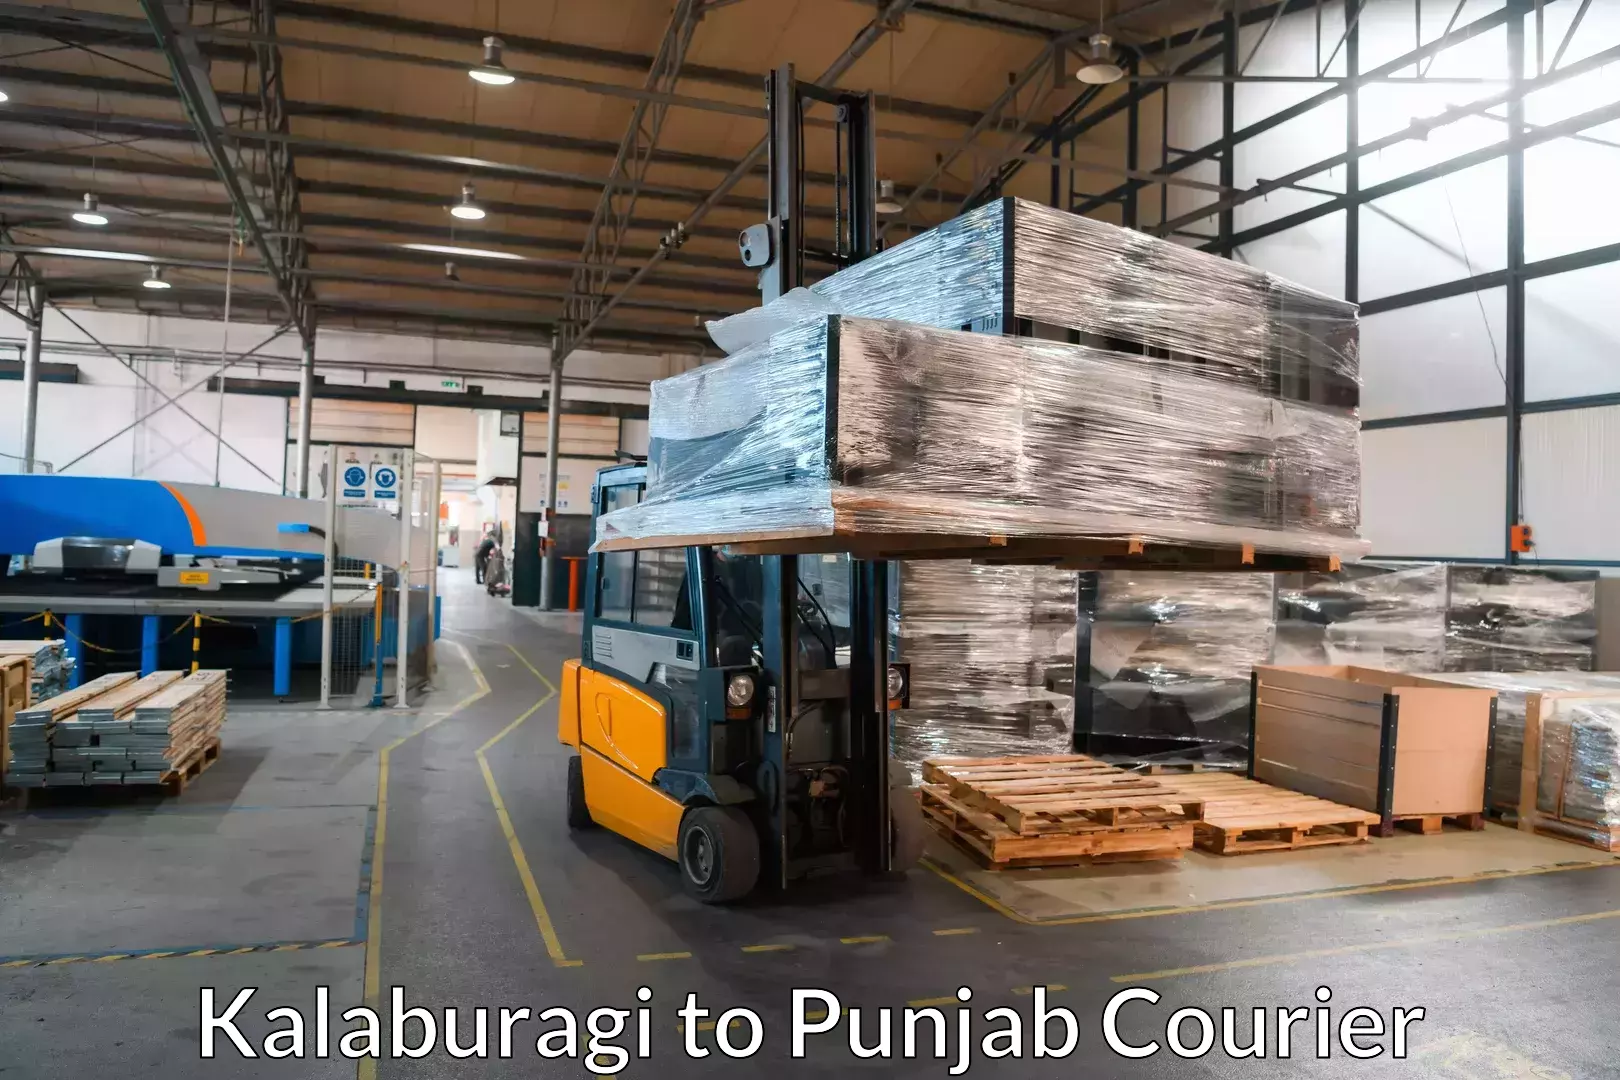 Professional packing services Kalaburagi to Punjab